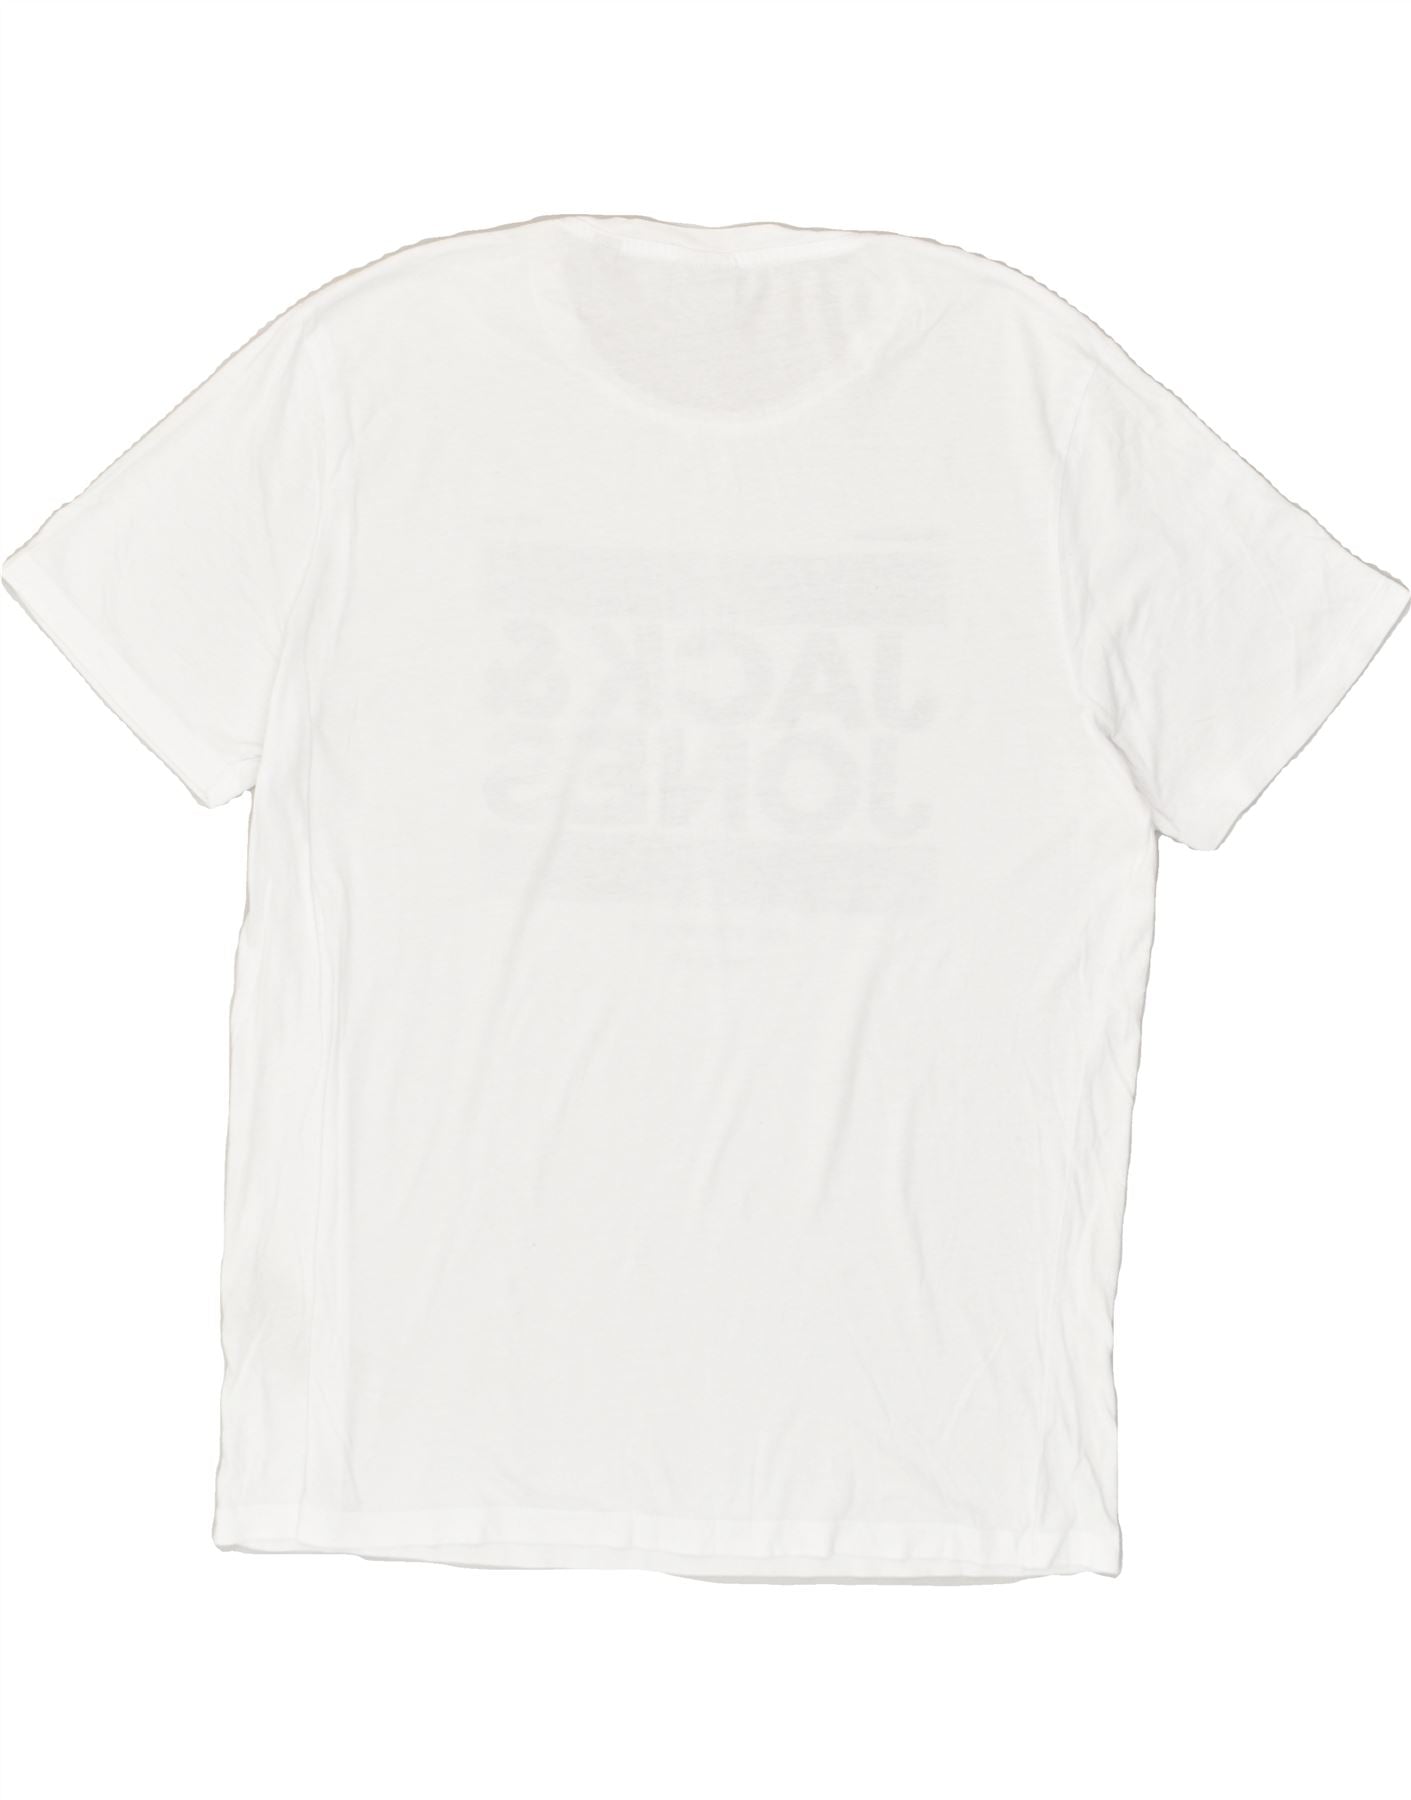 JACK & JONES Mens Graphic T-Shirt Top 2XL White Cotton